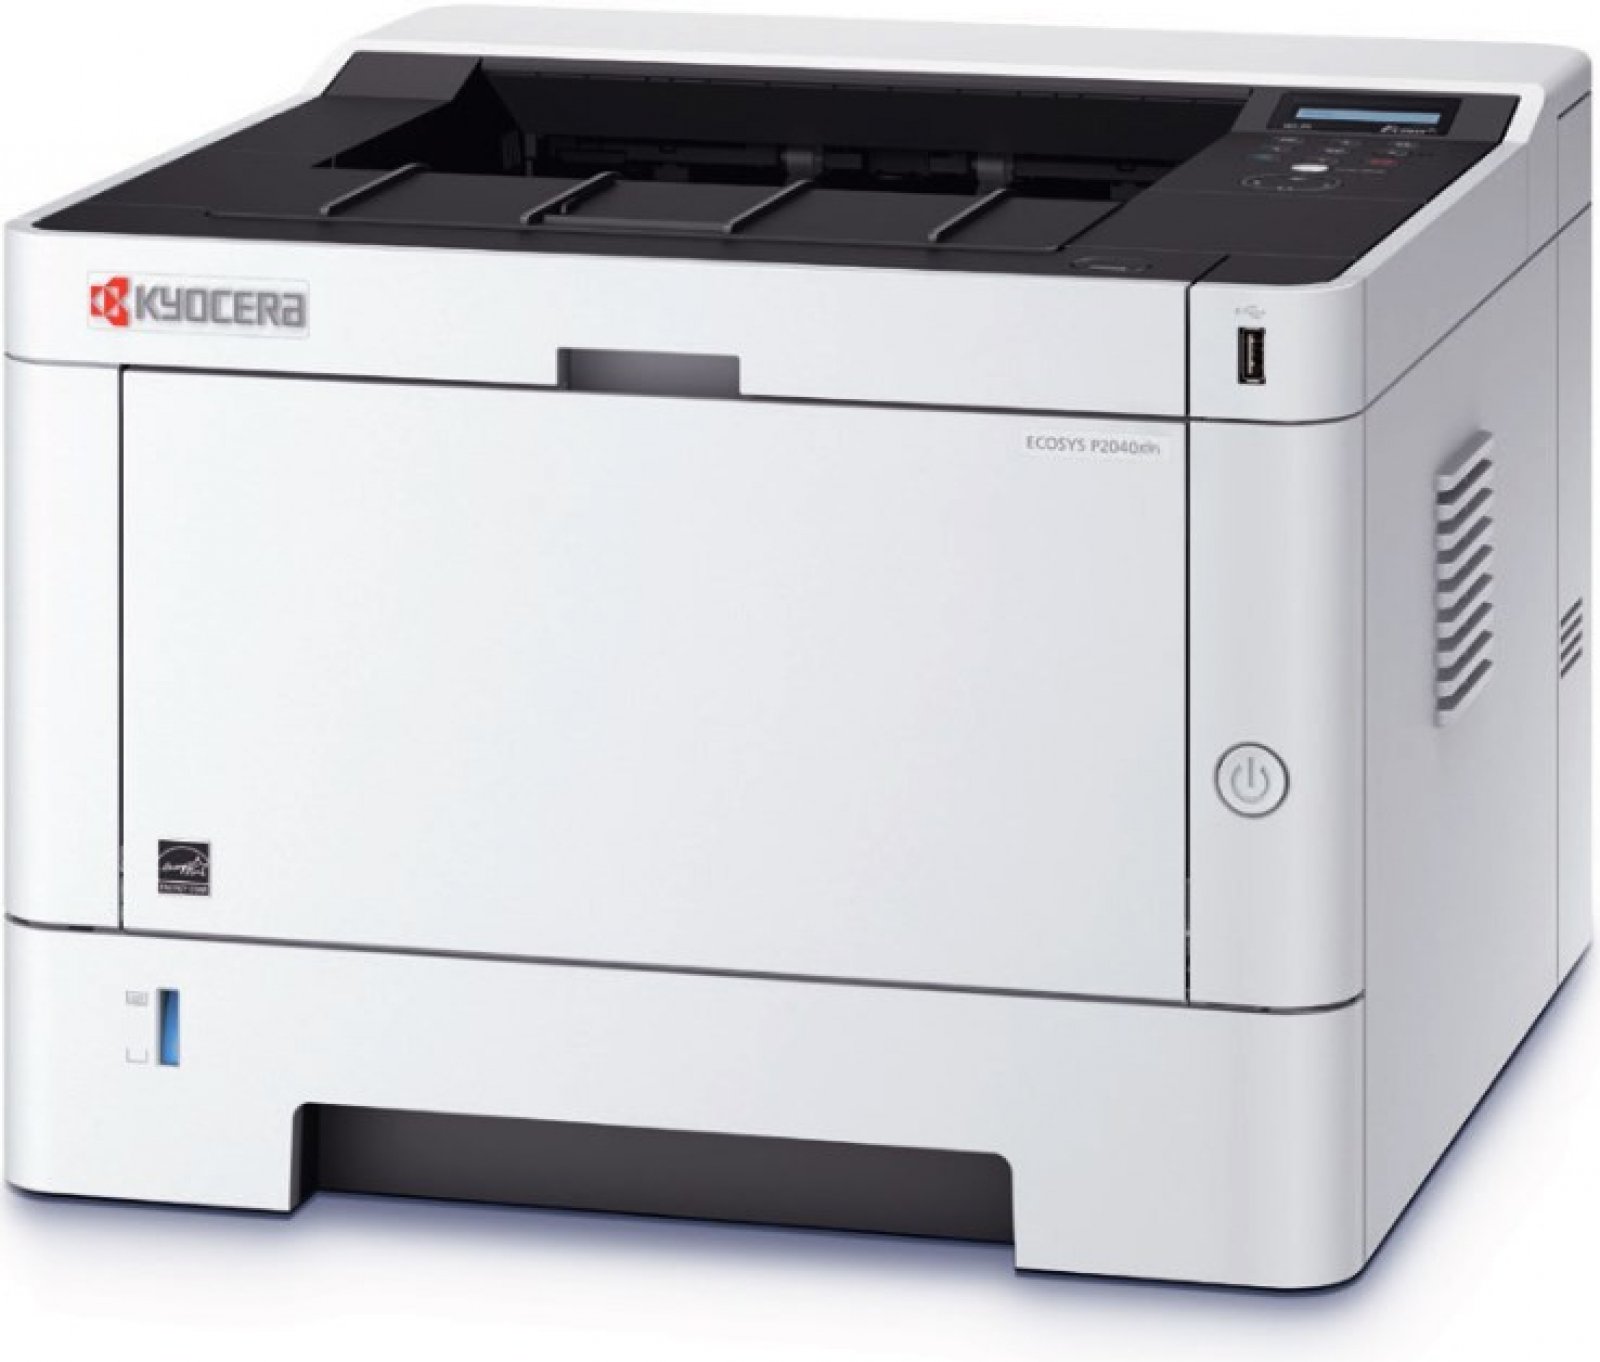 Image of Kyocera ECOSYS P2040dn 1102RX3NL0 laserová tiskárna CZ ID 408085